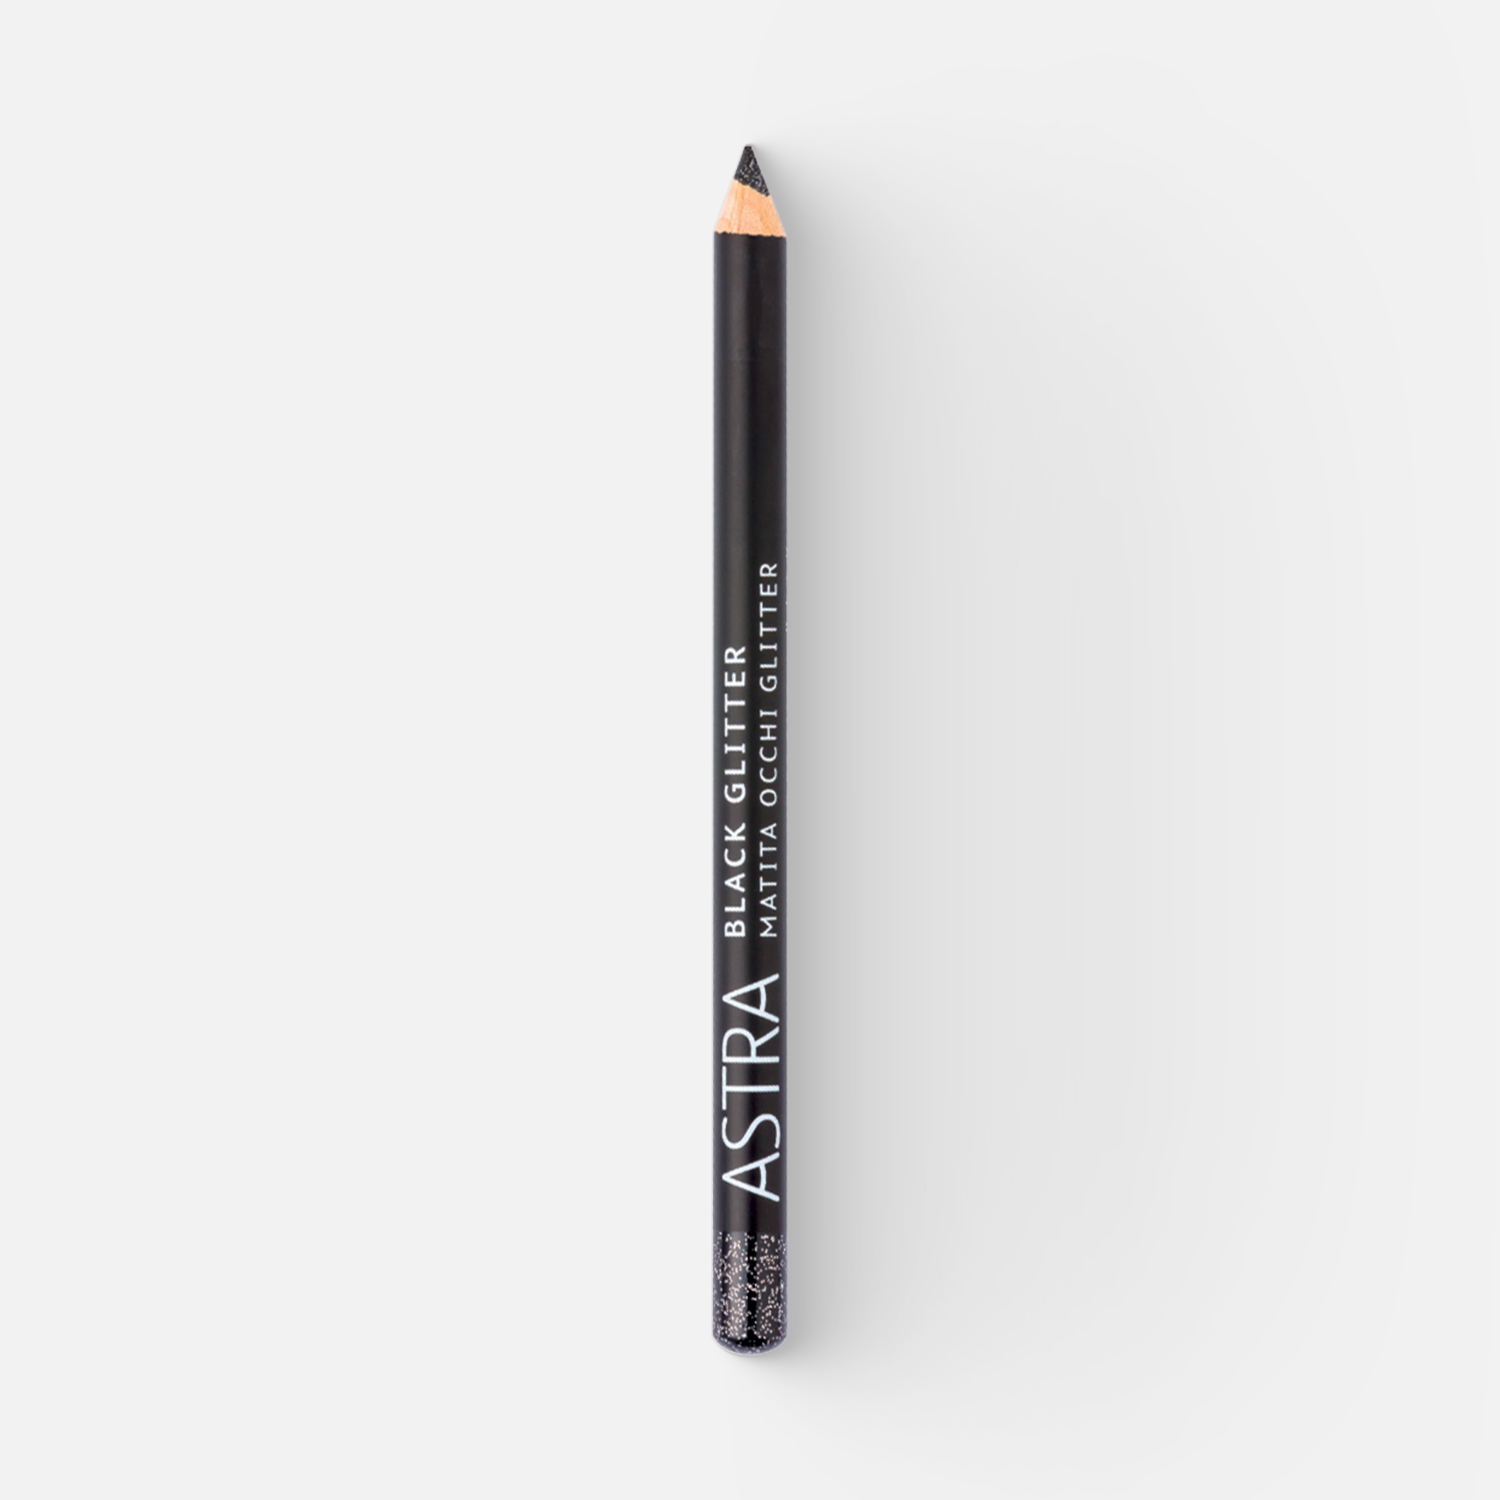 Карандаш для глаз Astra Black glitter контурный BG 7 г карандаш для глаз astra pure beauty контурный тон 01 4 г